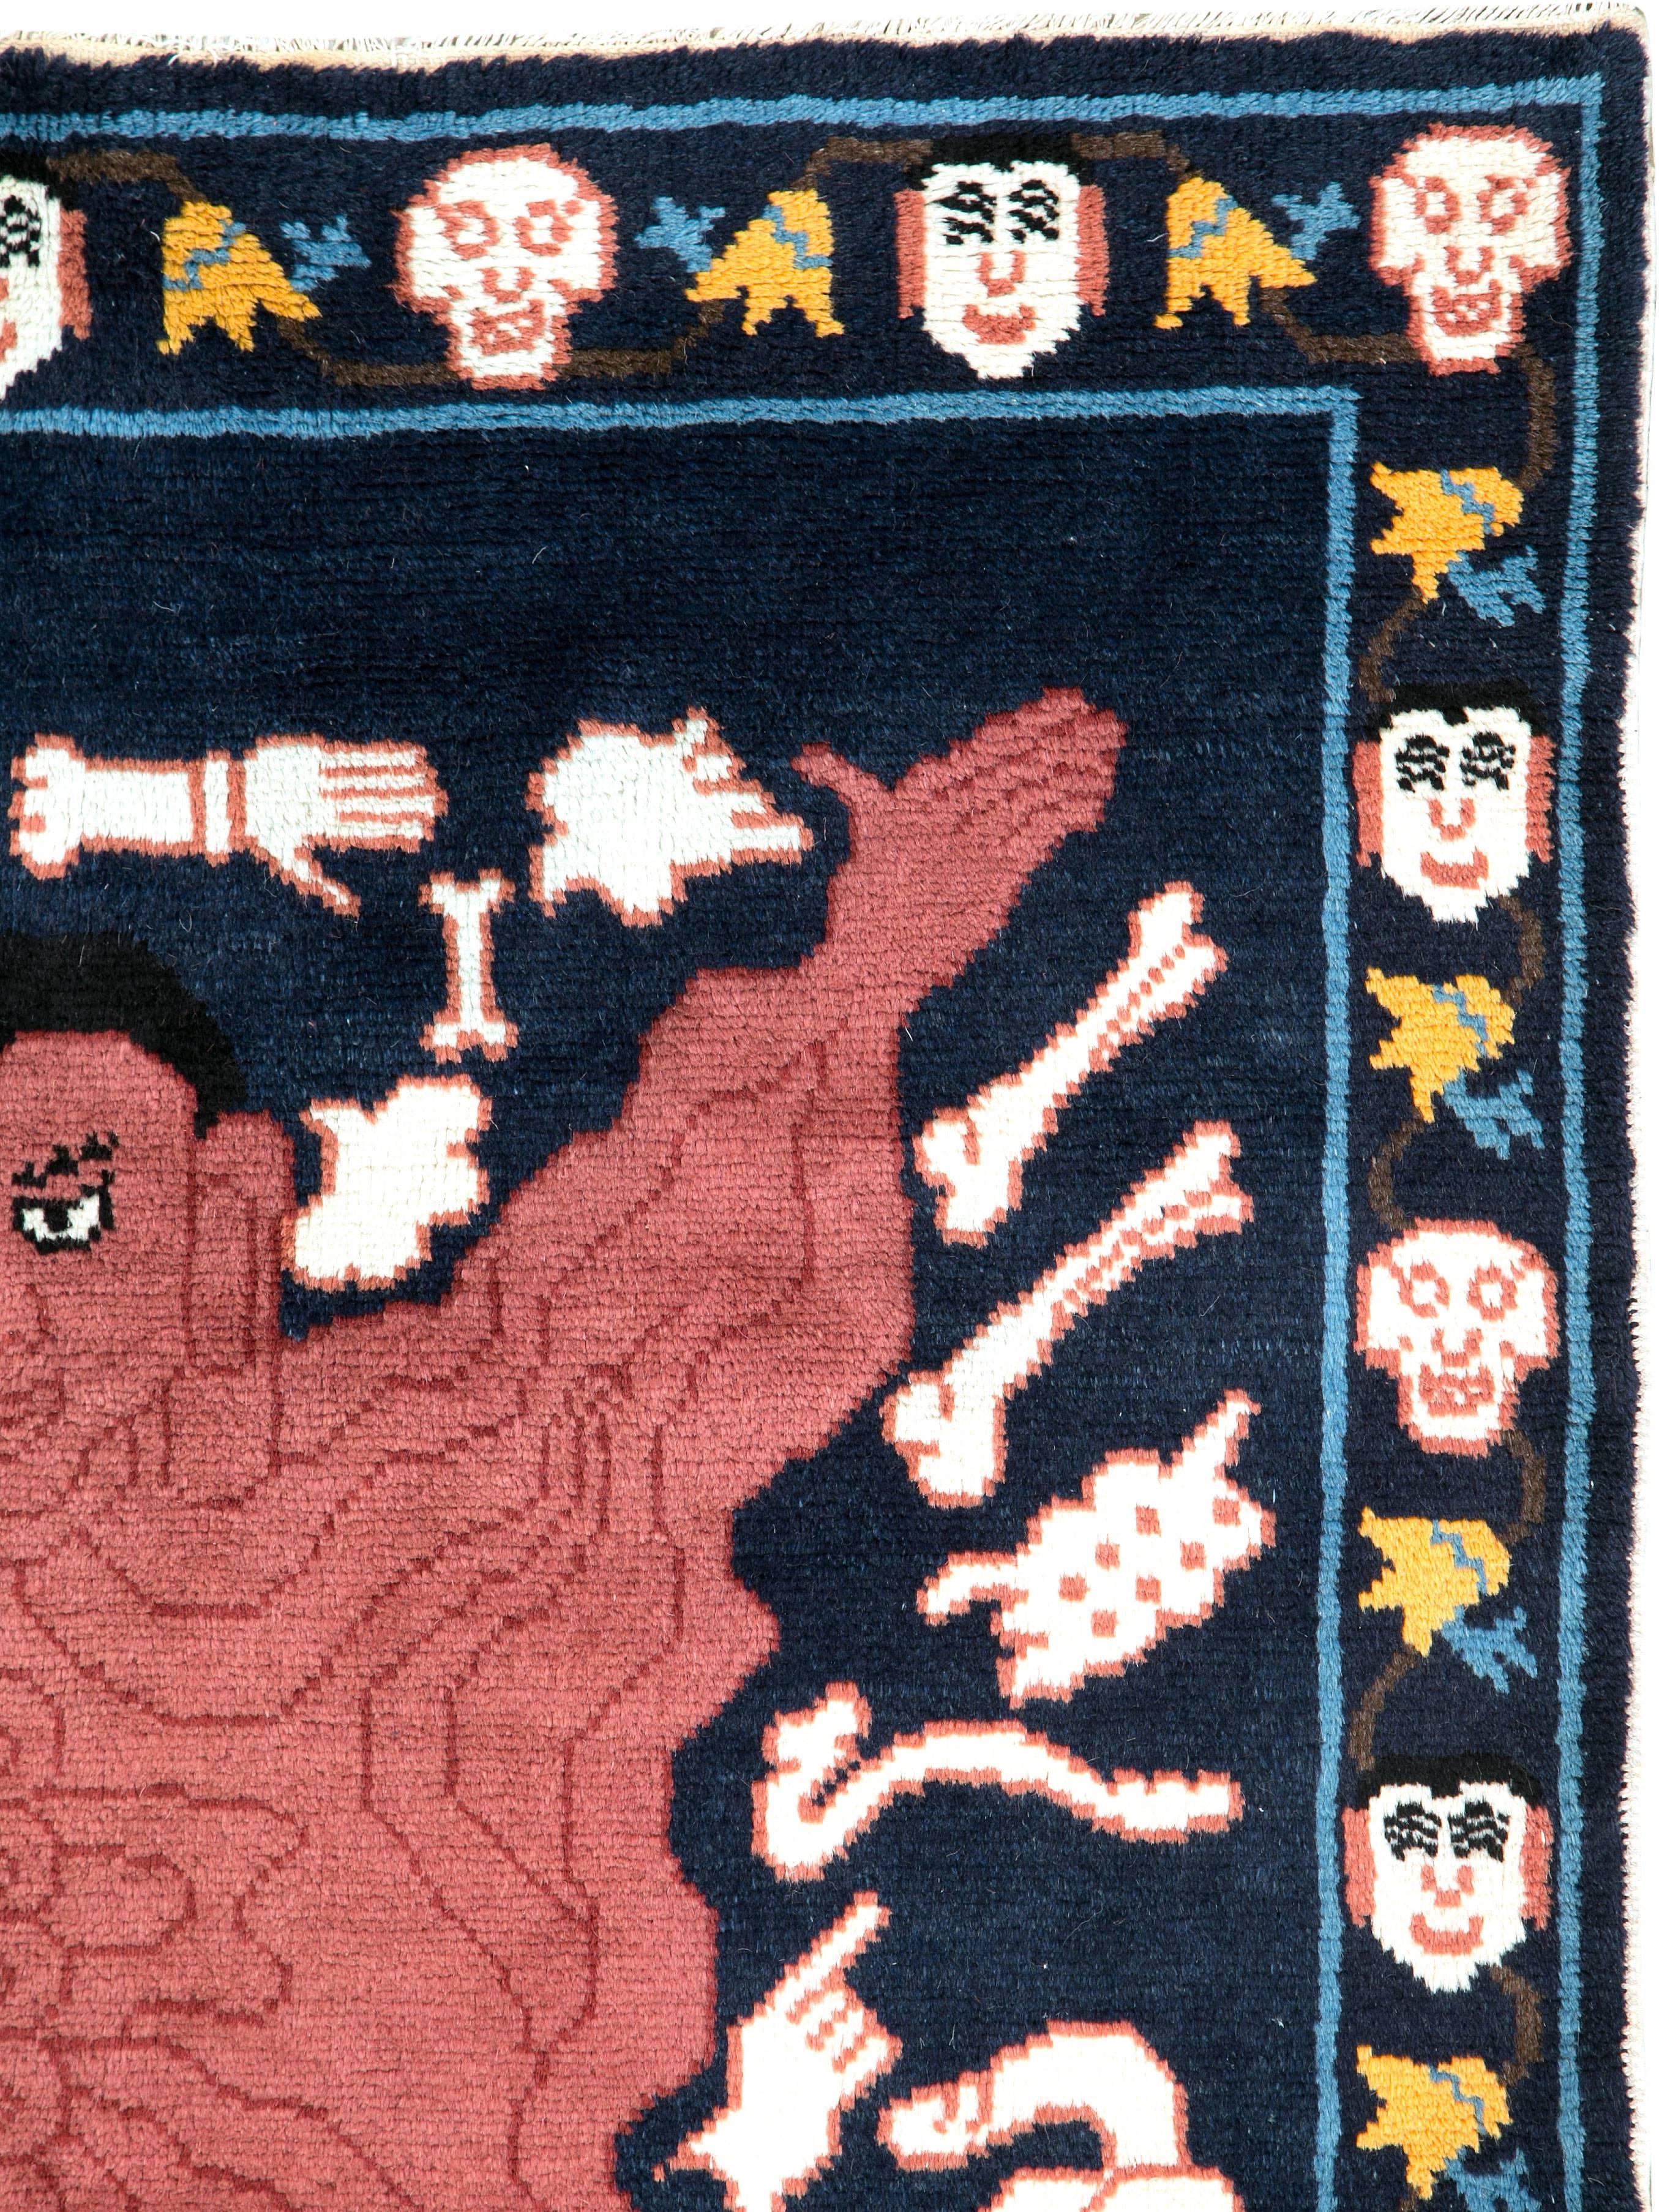 Ein tibetischer tantrischer Teppich aus der Mitte des 20. Jahrhunderts mit dem Bildnis eines gehäuteten Mannes. Das makabre Motiv befindet sich auf einem tiefblauen Feld.

Wird von Vajrayana-Buddhisten als Sitz der Macht während der Ausübung